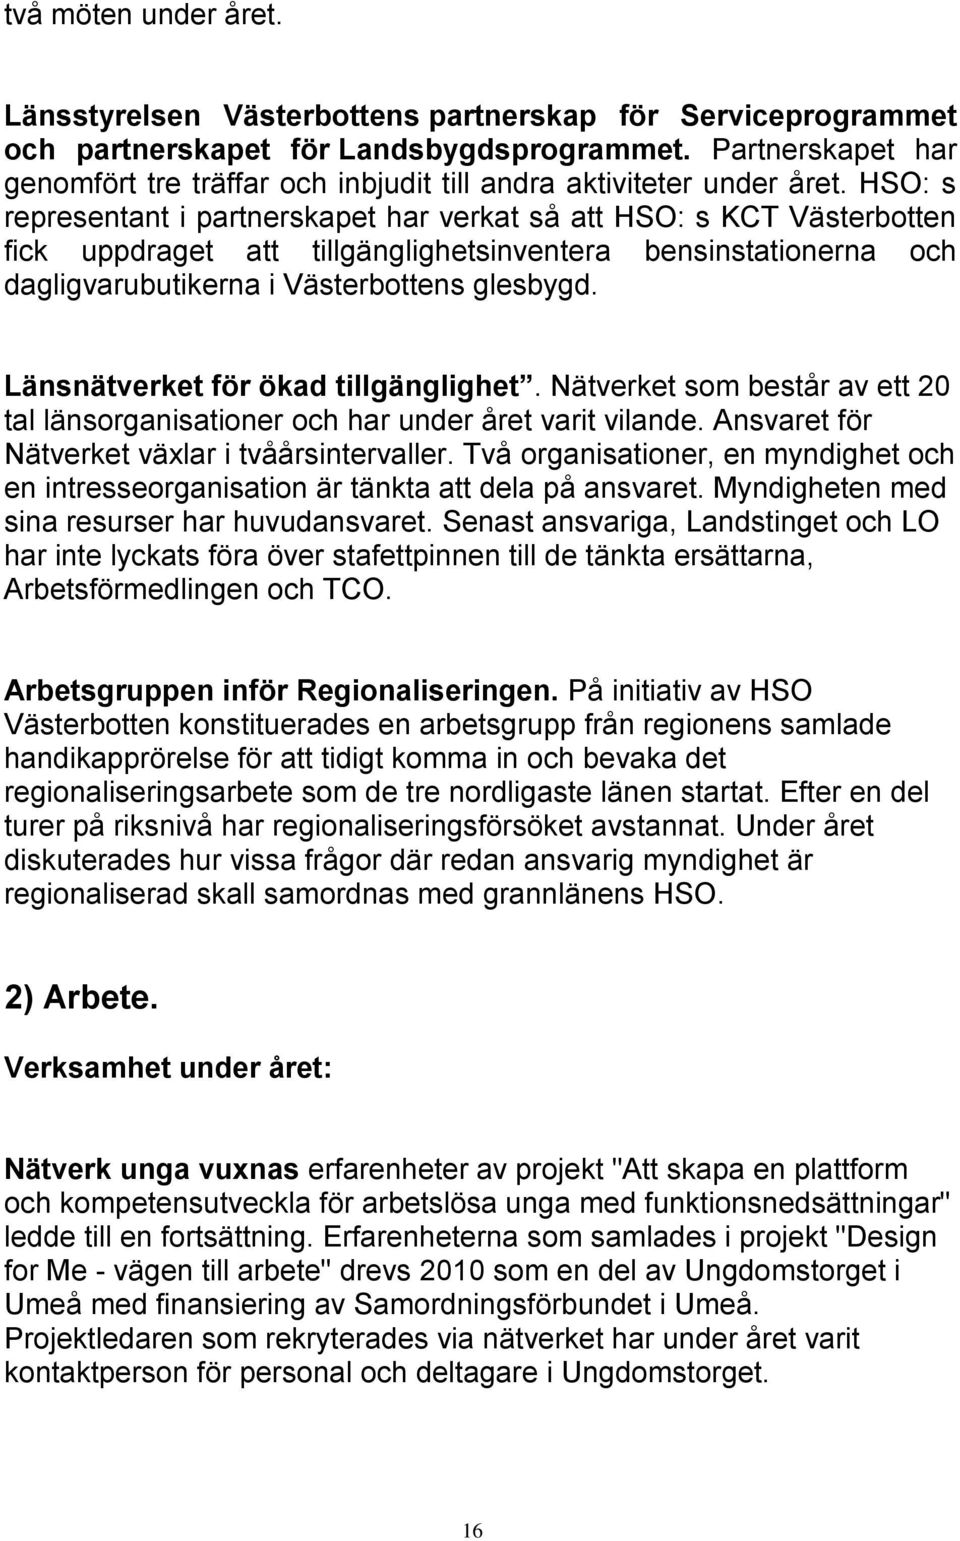 HSO: s representant i partnerskapet har verkat så att HSO: s KCT Västerbotten fick uppdraget att tillgänglighetsinventera bensinstationerna och dagligvarubutikerna i Västerbottens glesbygd.